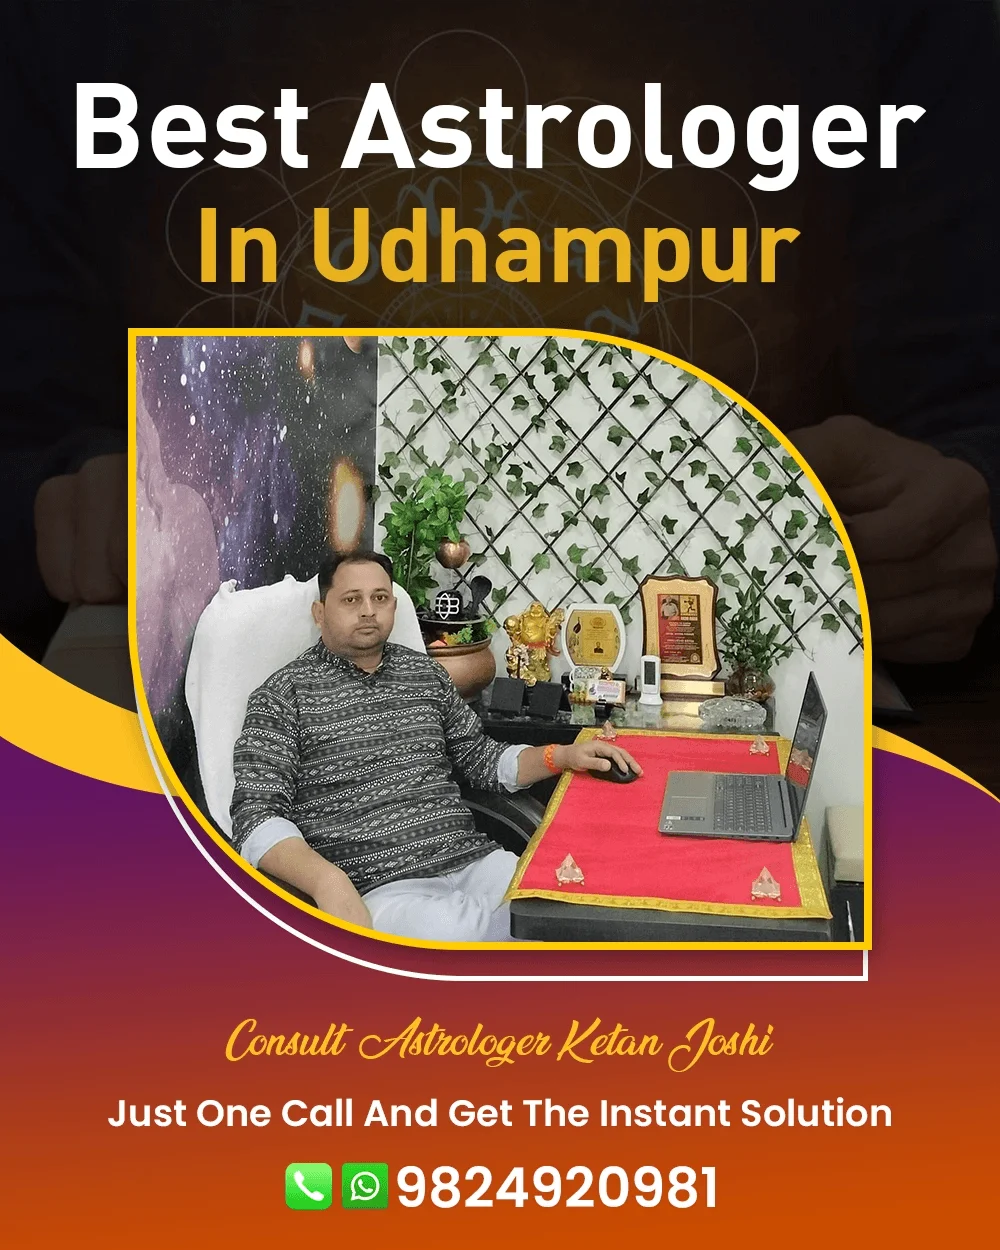 Best Astrologer In Udhampur